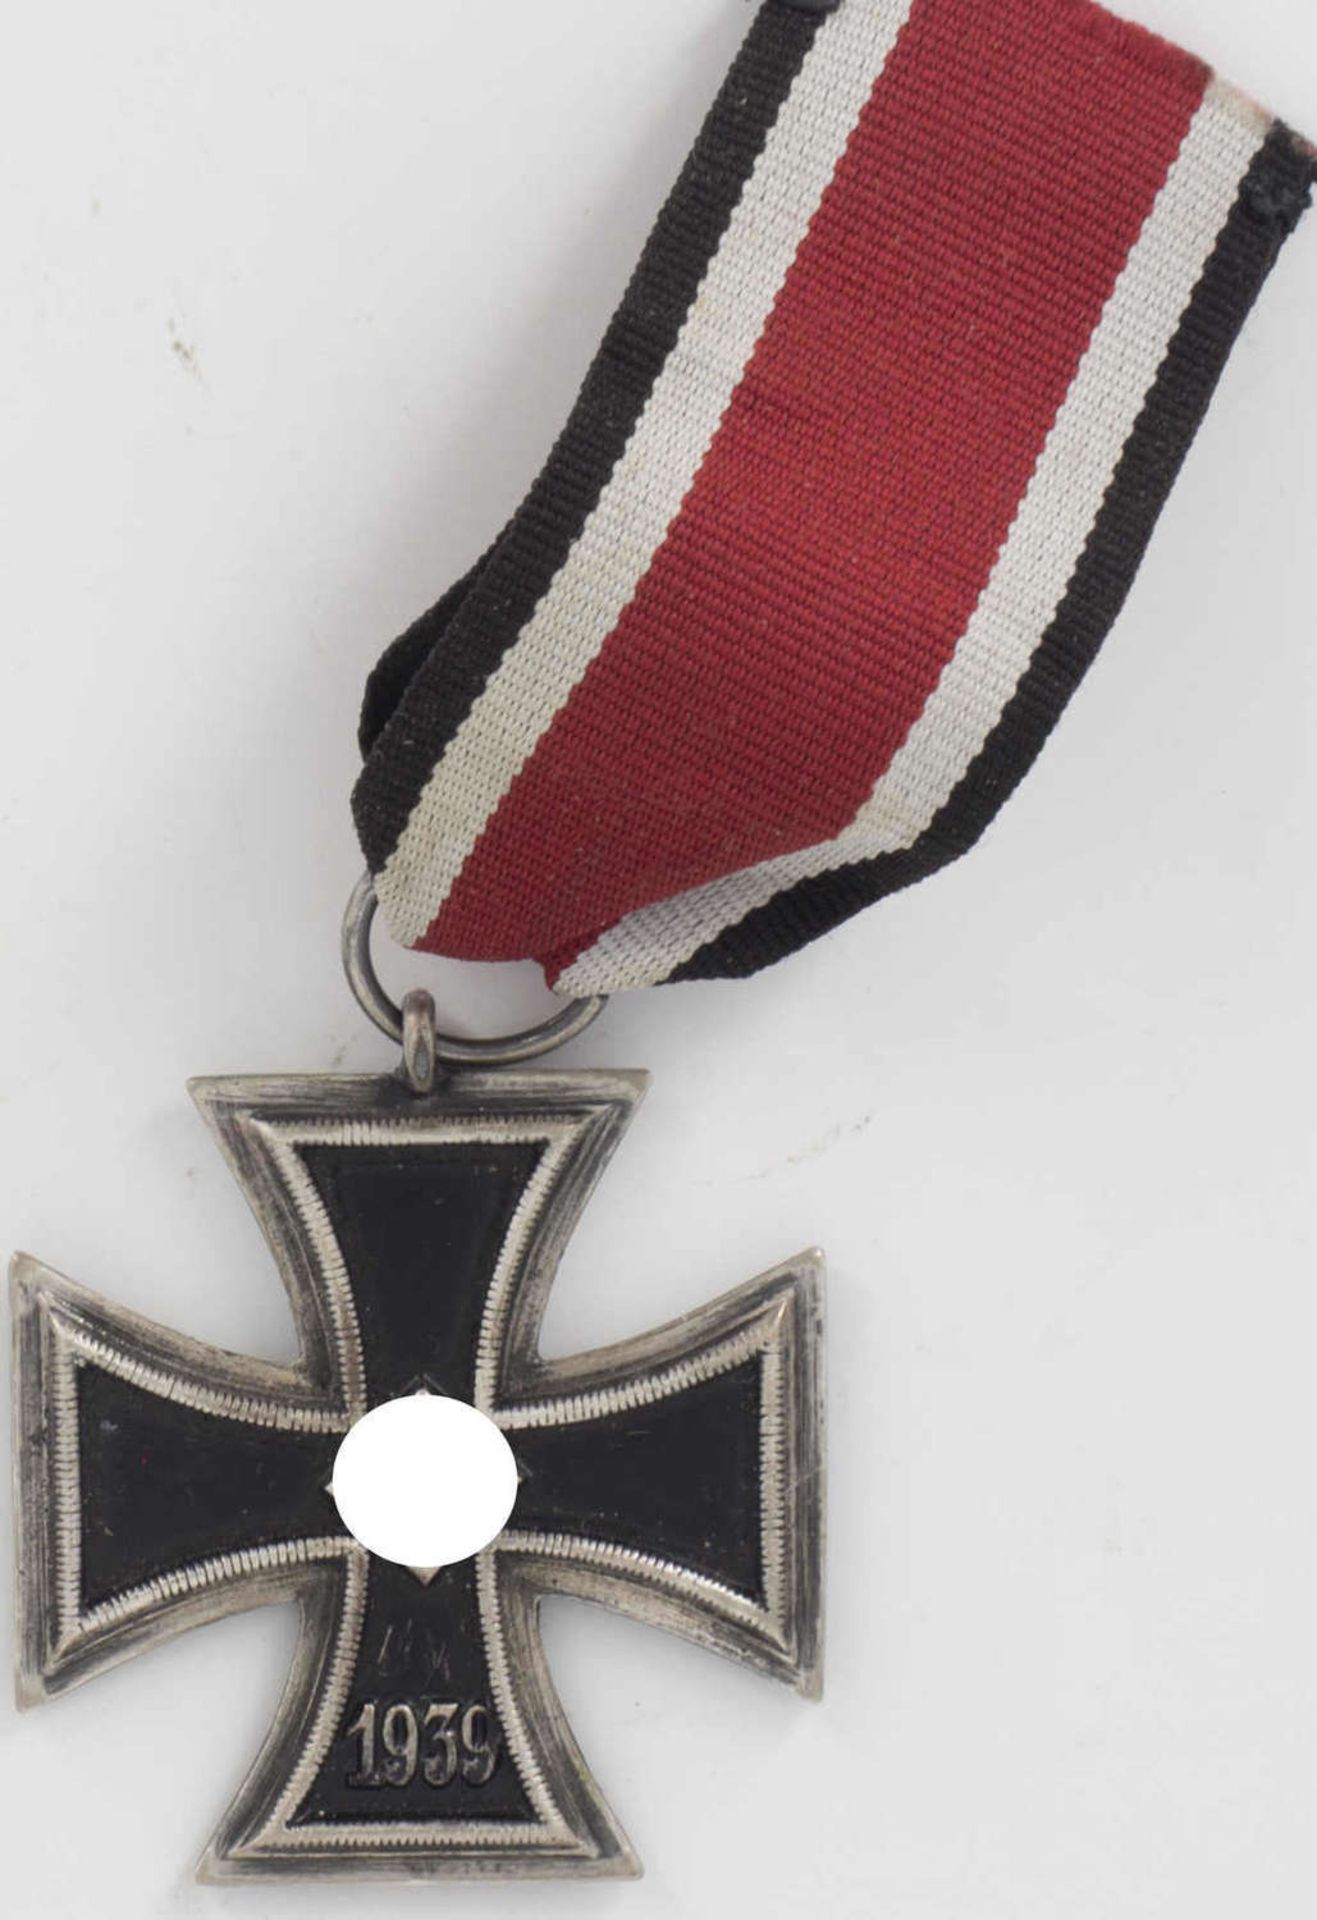 Iron cross 2nd class on a ribbon, 1939.